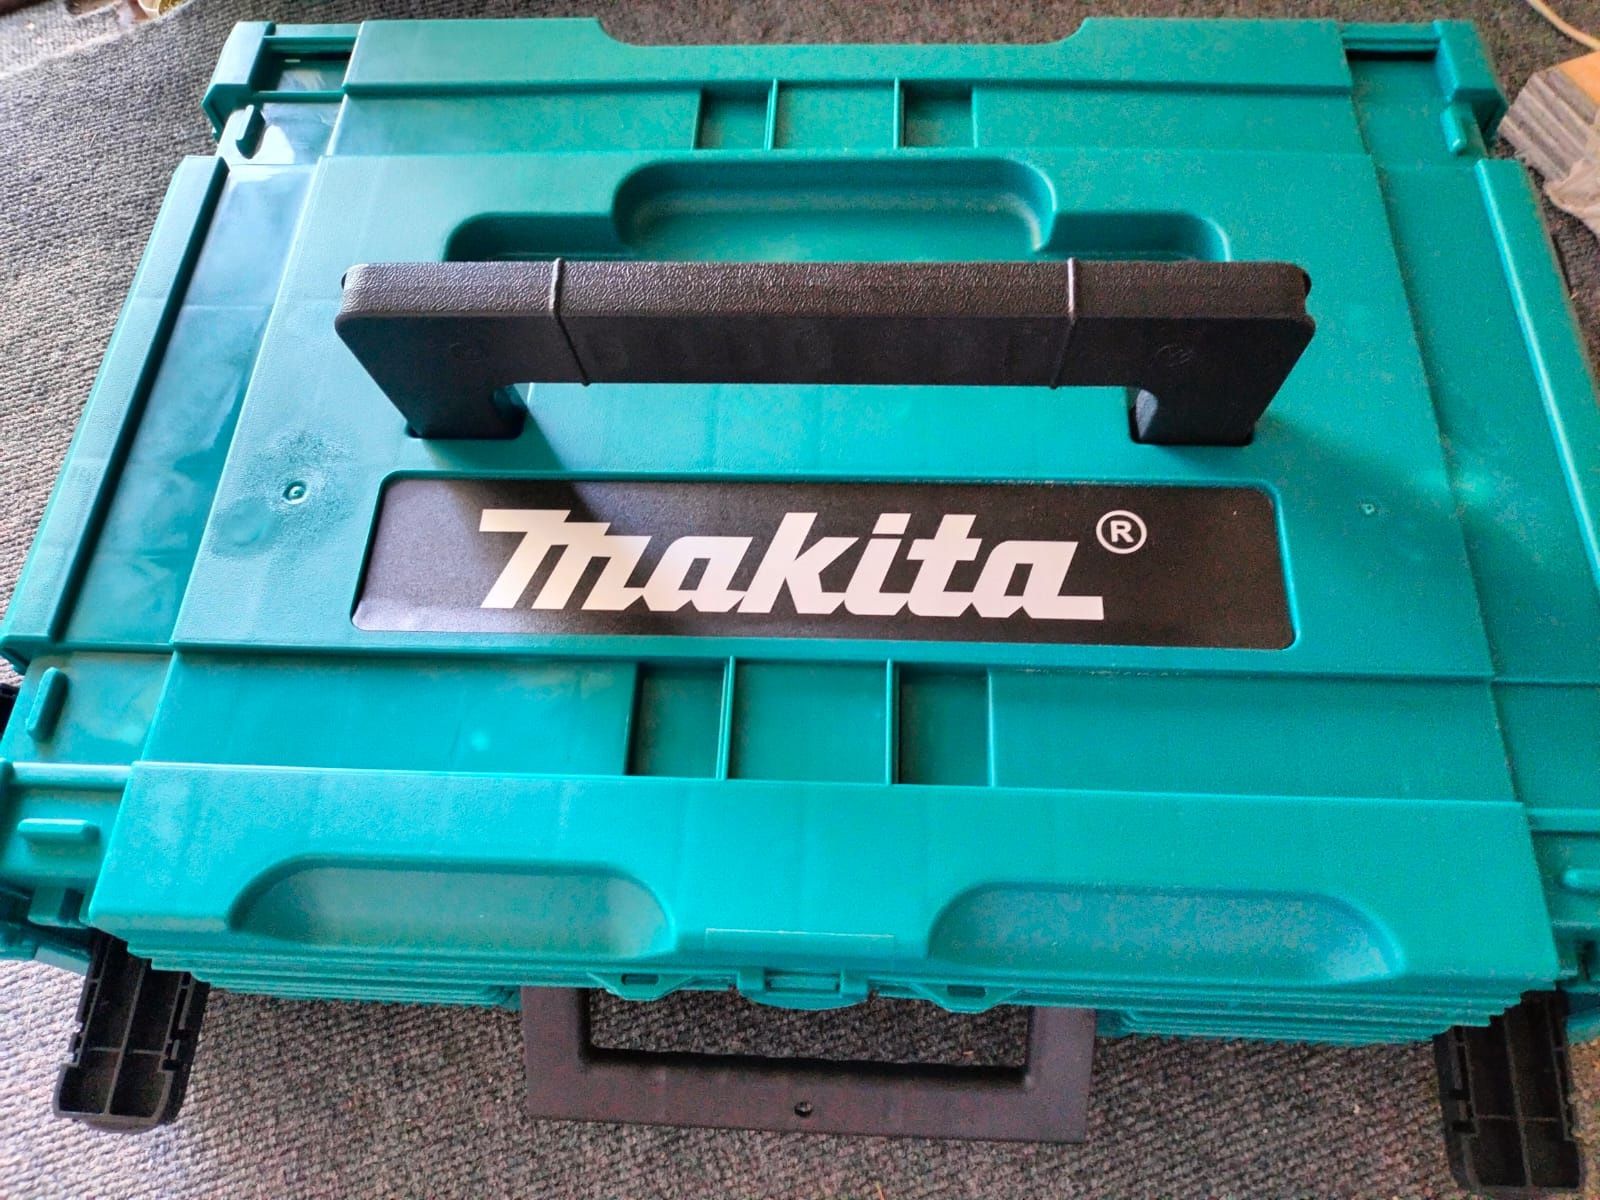 Продам строительный набор инструментов Makita